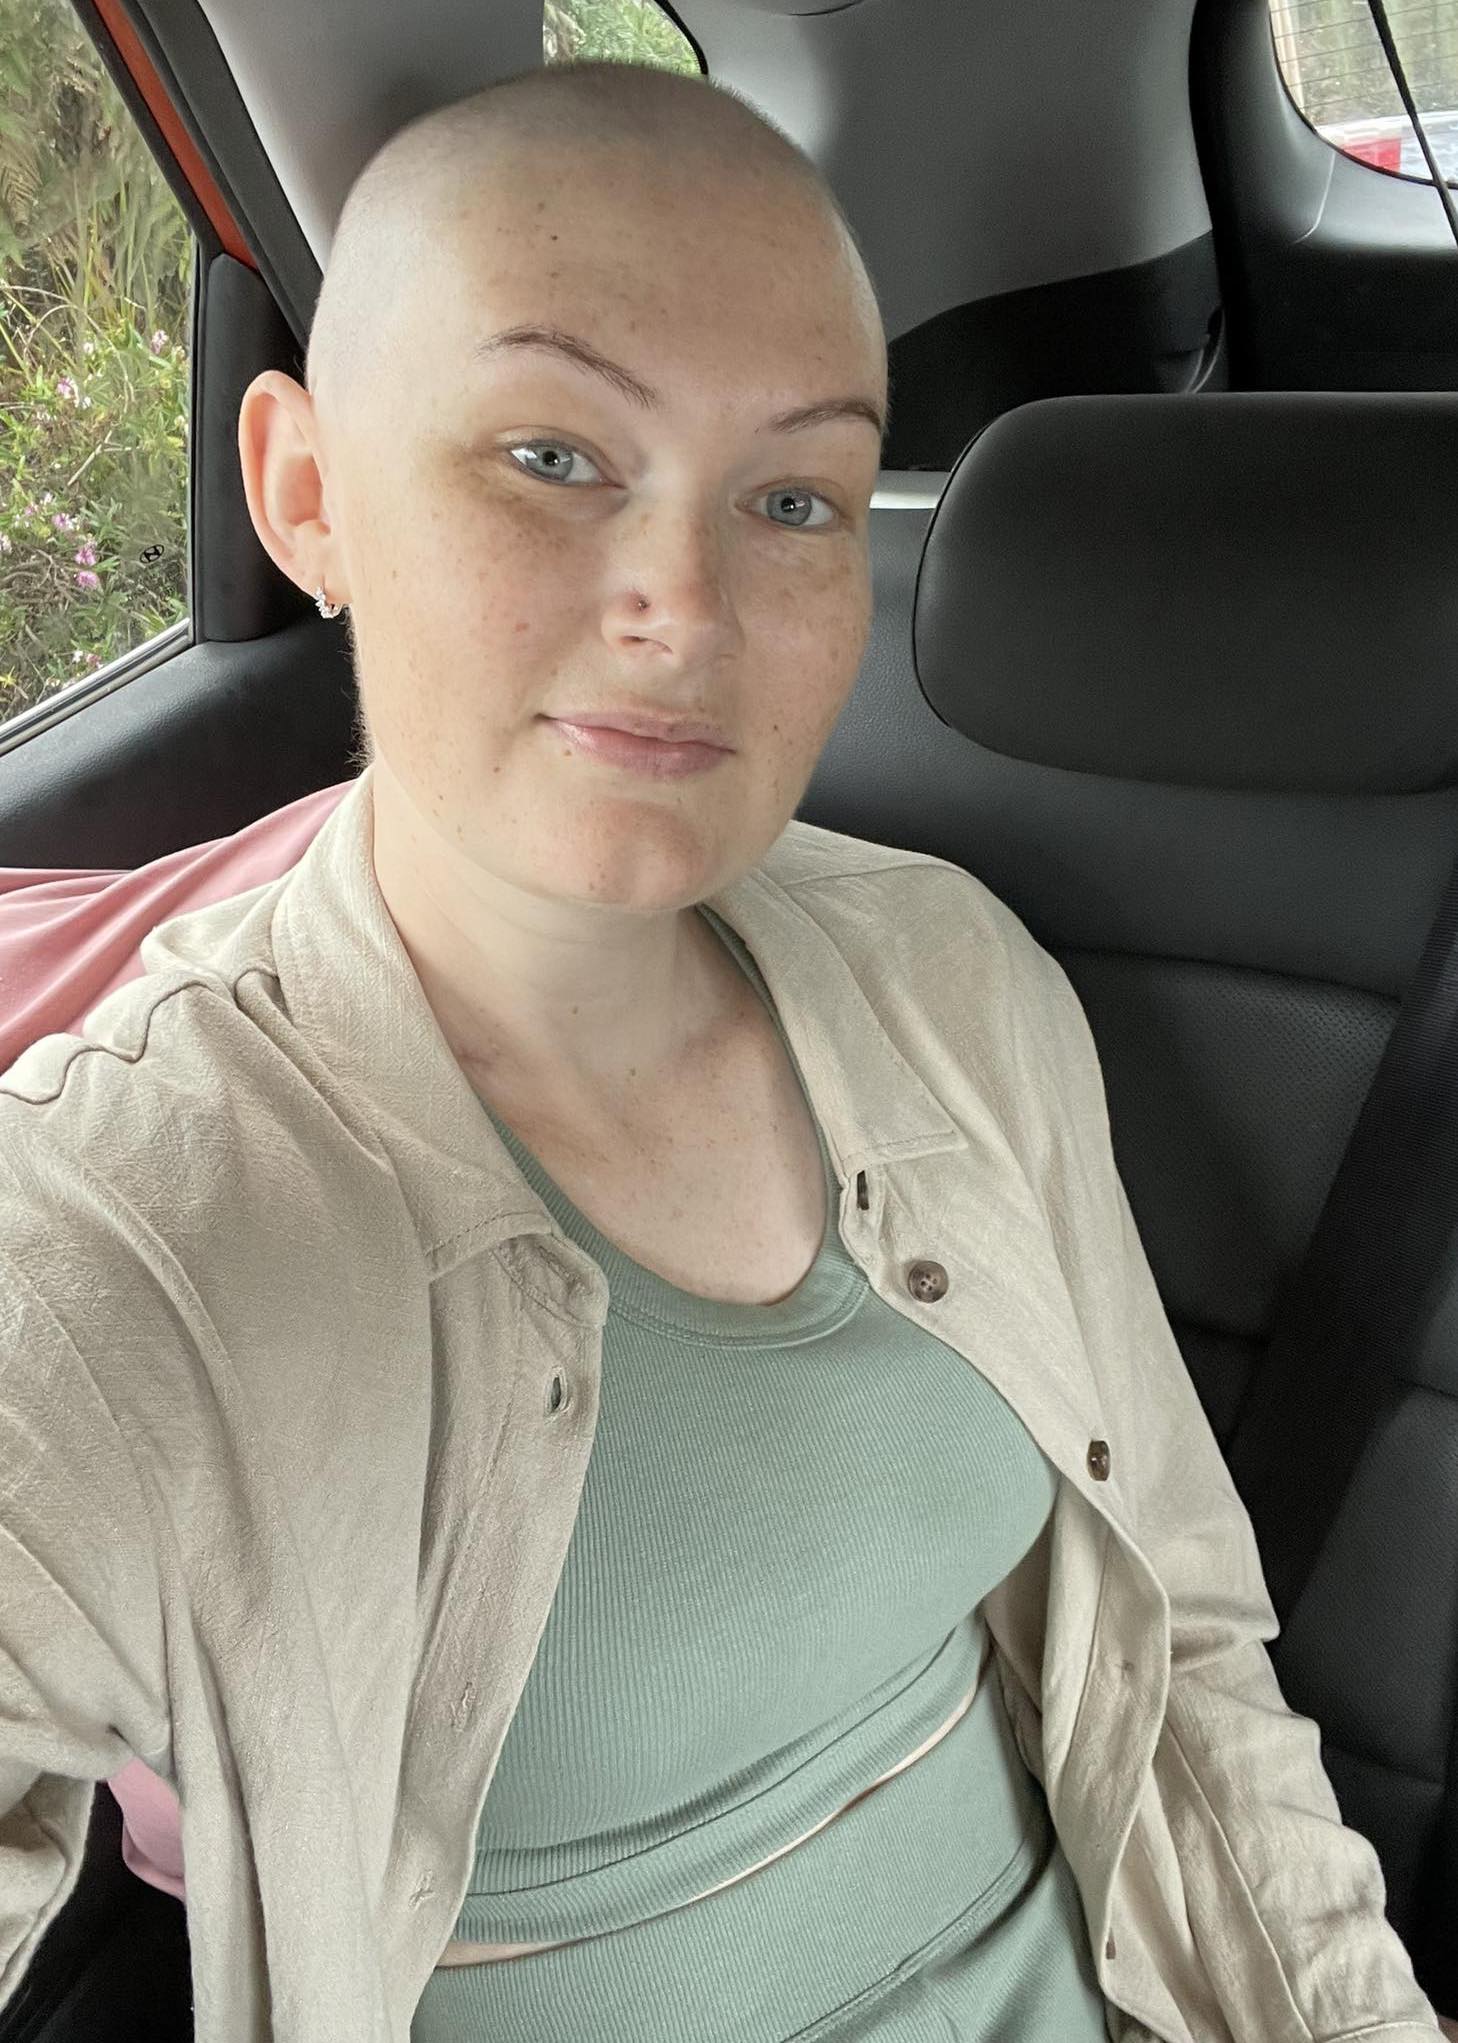 Die Neuseeländerin verlor während einer Chemotherapie ihre Haare